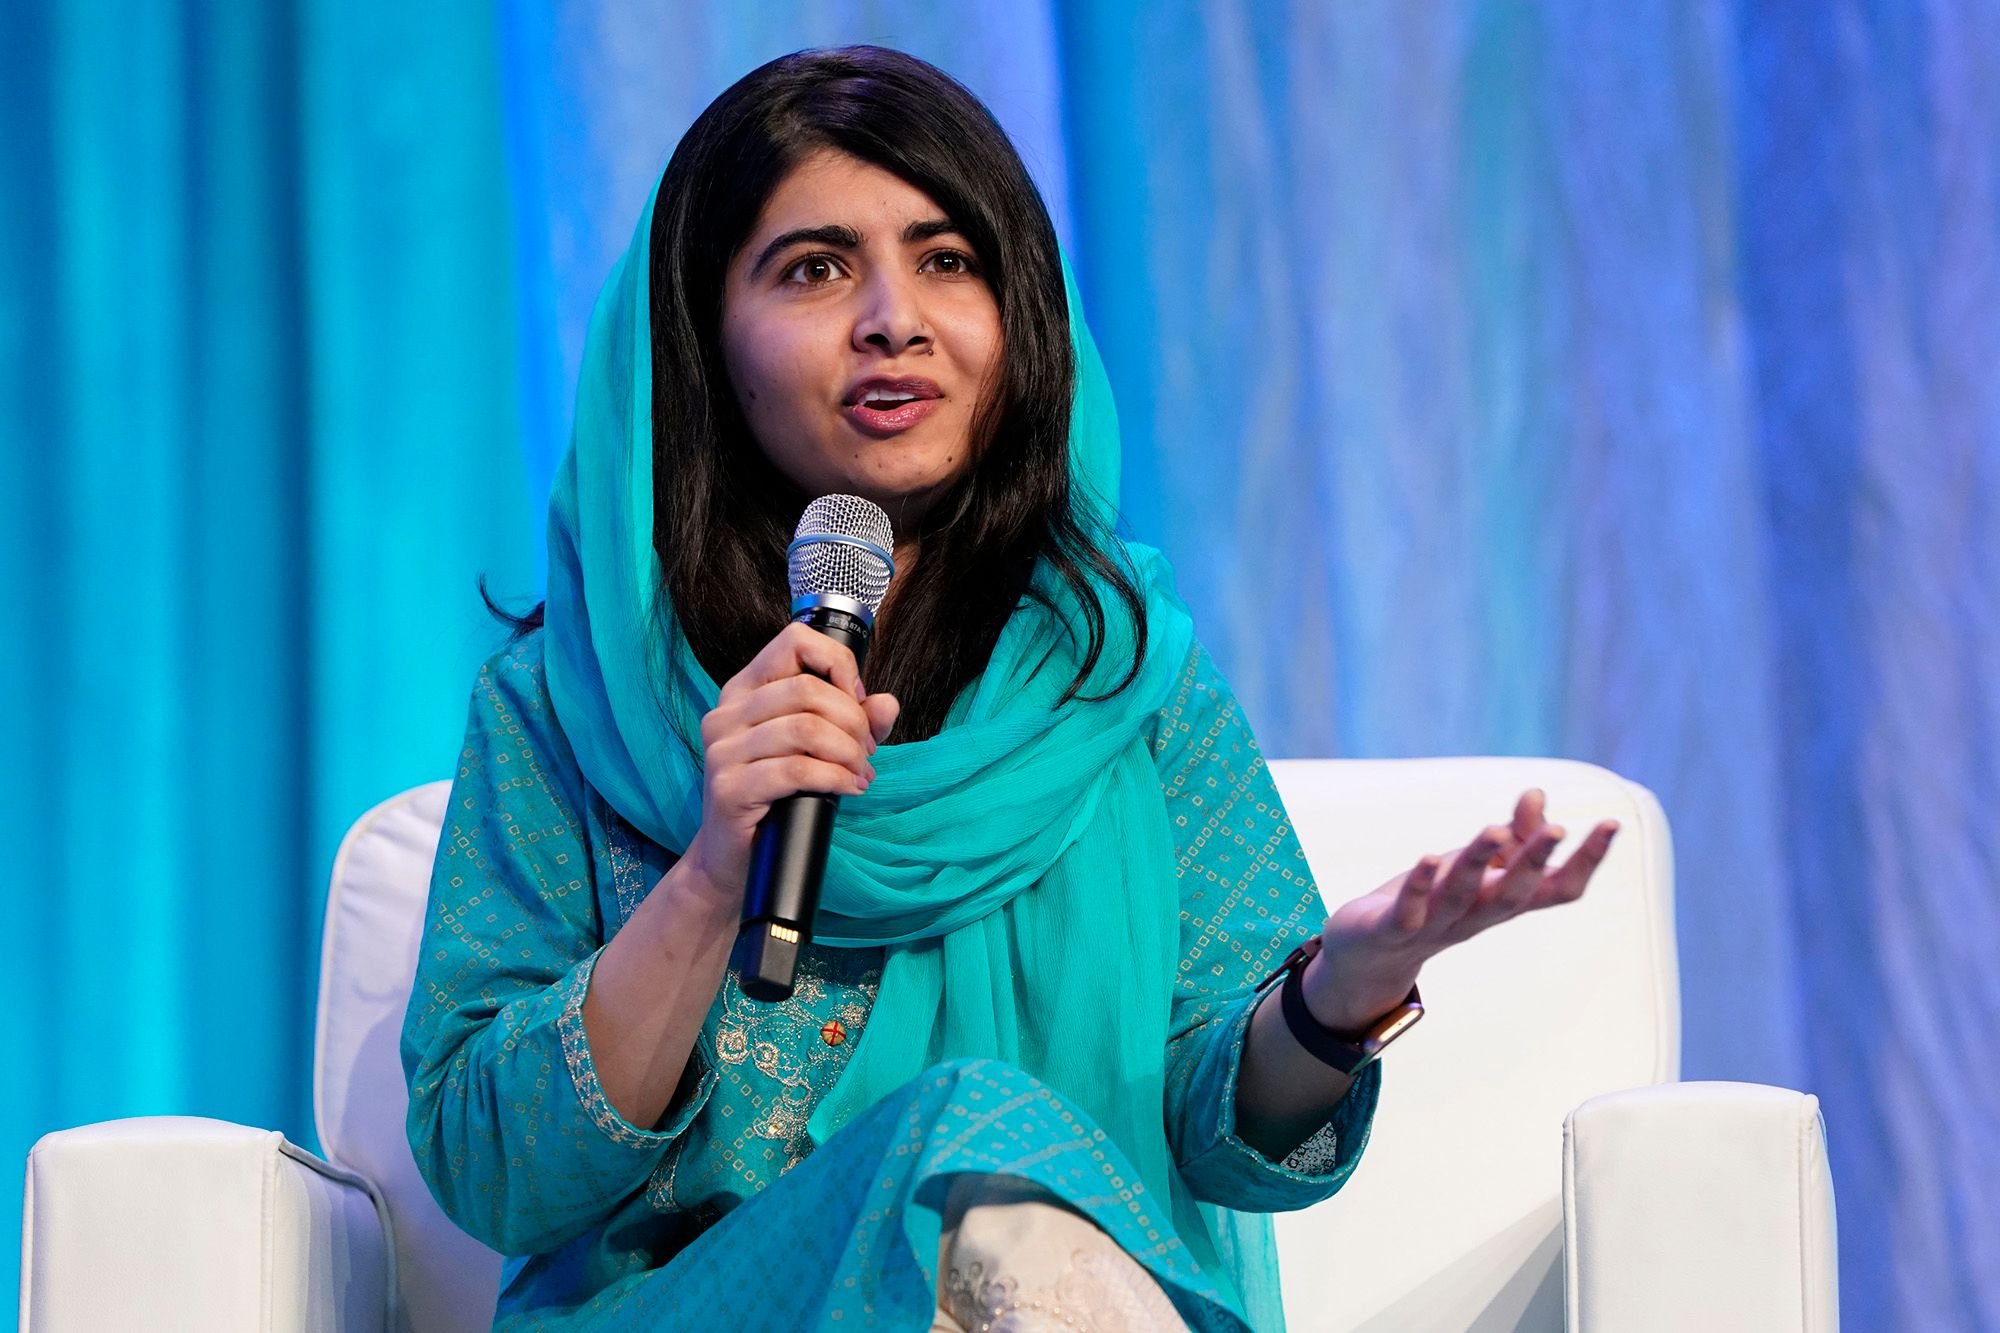  Malala Yousafzai, laureată cu Nobel pentru Pace, a încheiat un parteneriat multianual cu Apple TV Plus